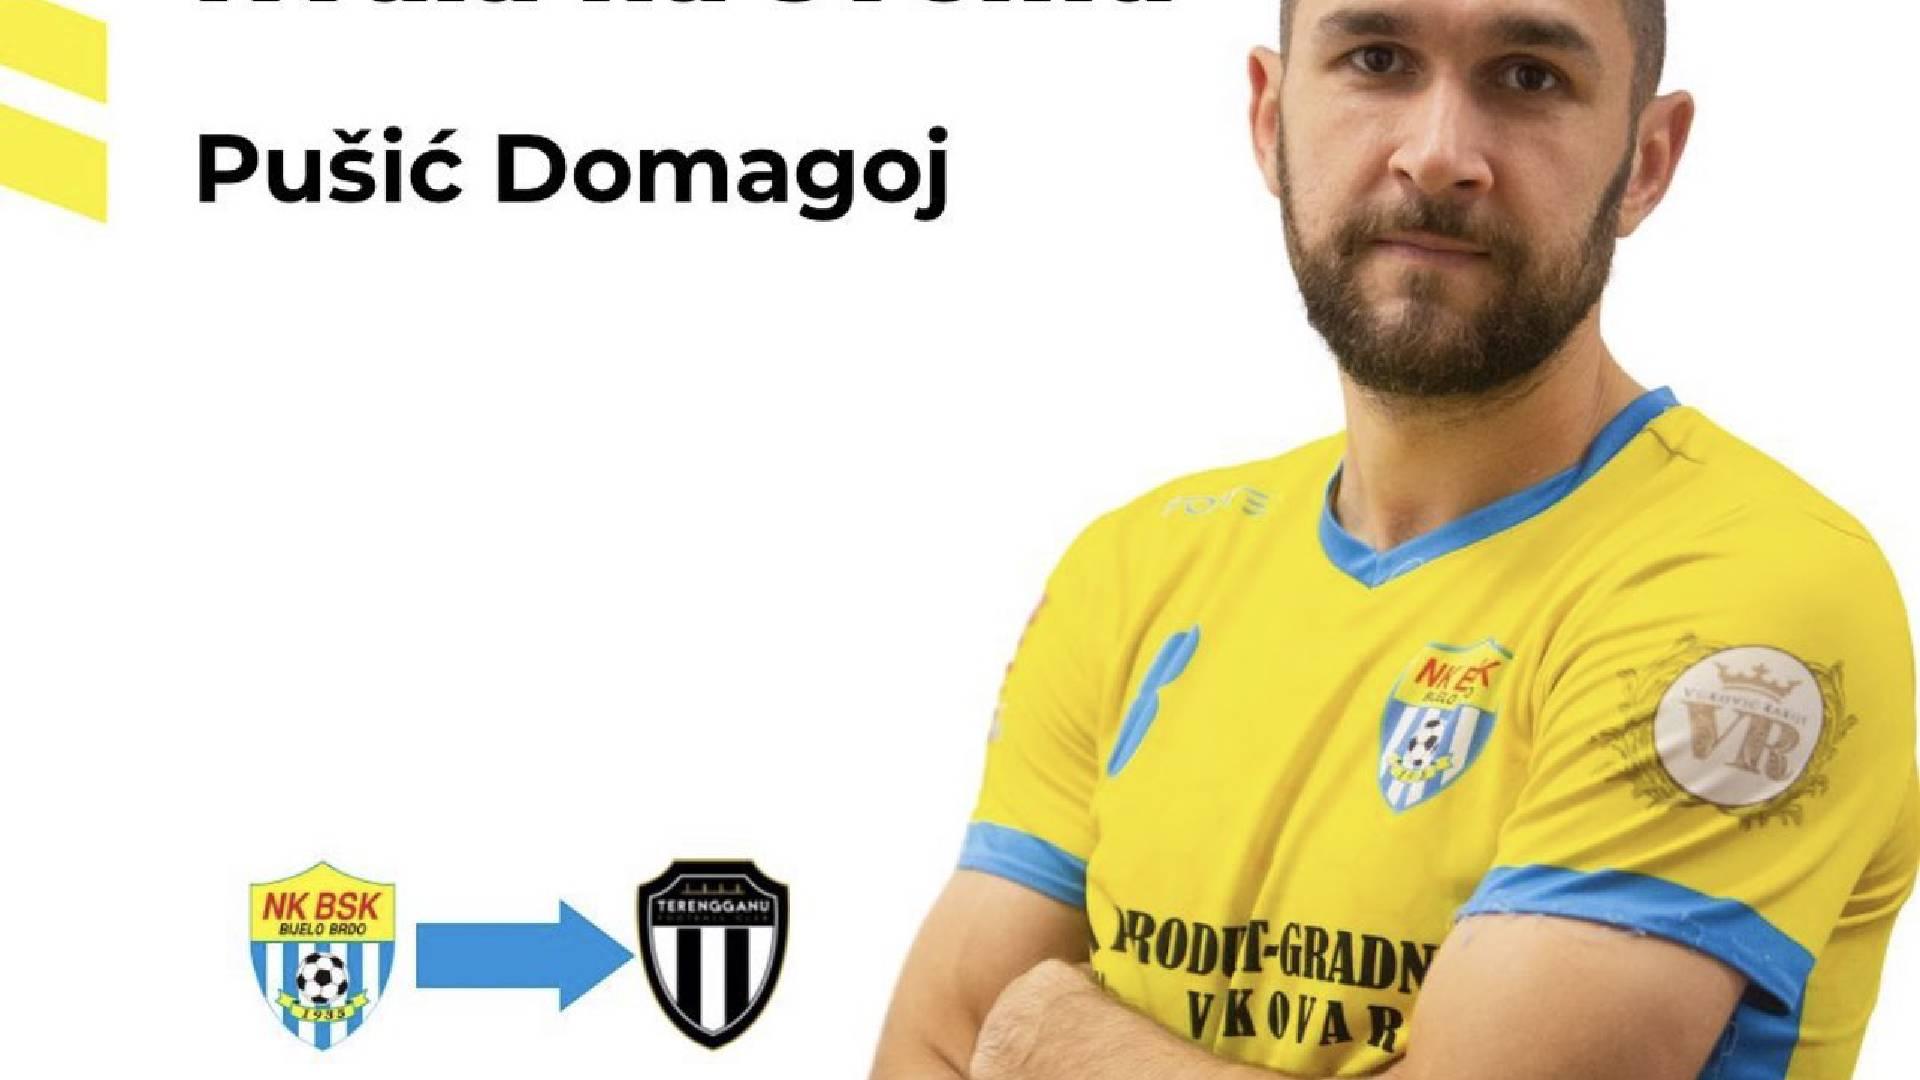 Domagoj Pusic Terengganu FC BSK Bijelo Brdo Kelab Croatia Umum Perpindahan Import Baru Terengganu